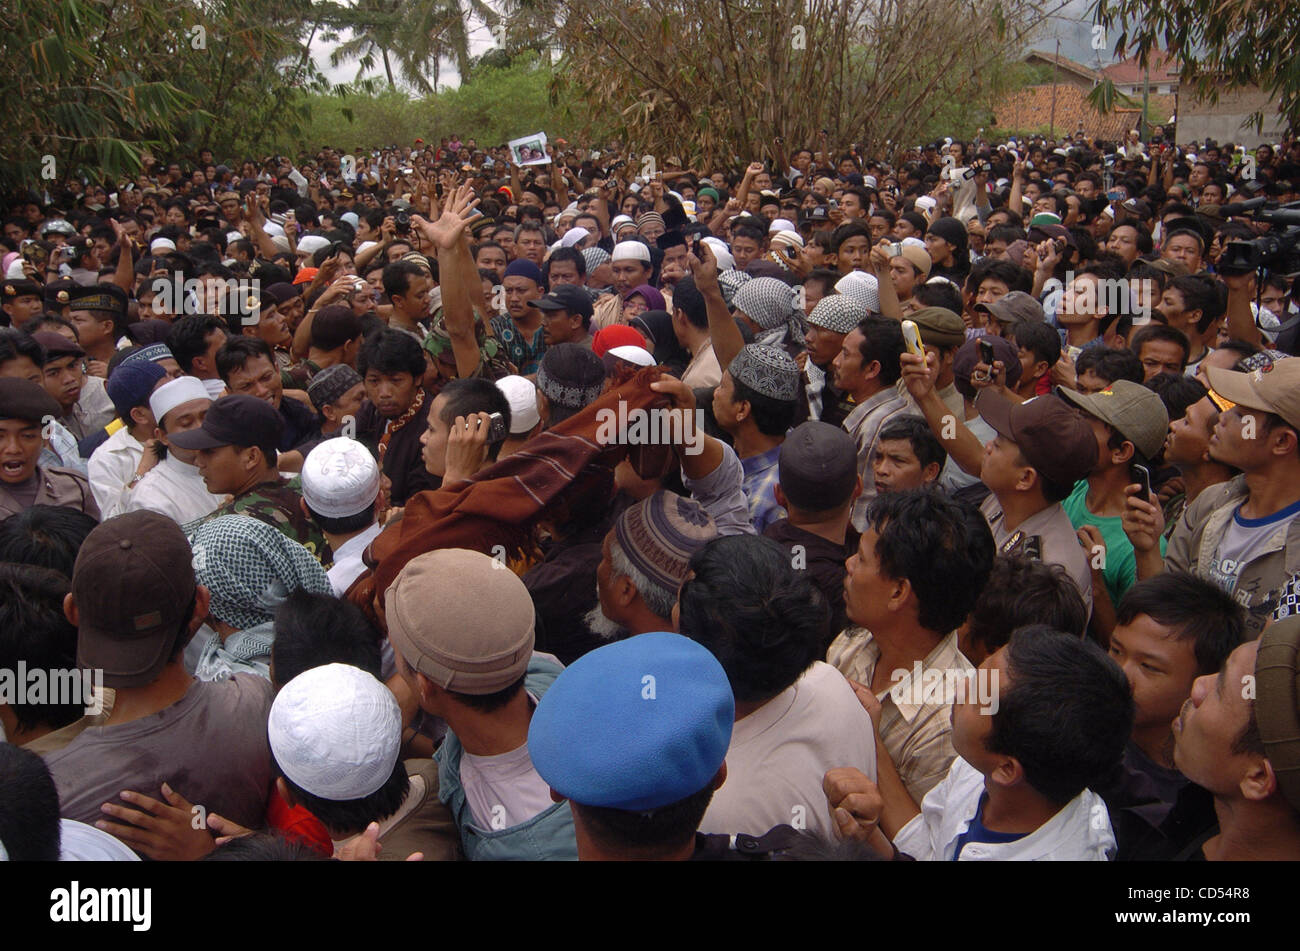 Sostenitore di Bali bomber Imam Samudra, prega durante il corteo funebre in Serang, provincia di Banten.Indonesia.Novembre 9, 2008. Centinaia di musulmani inflessibile, alcuni canti "Allahu Akbar' (Dio è più grande), riuniti per i funerali dei tre militanti indonesiano eseguito domenica per il 2002 Bali Foto Stock